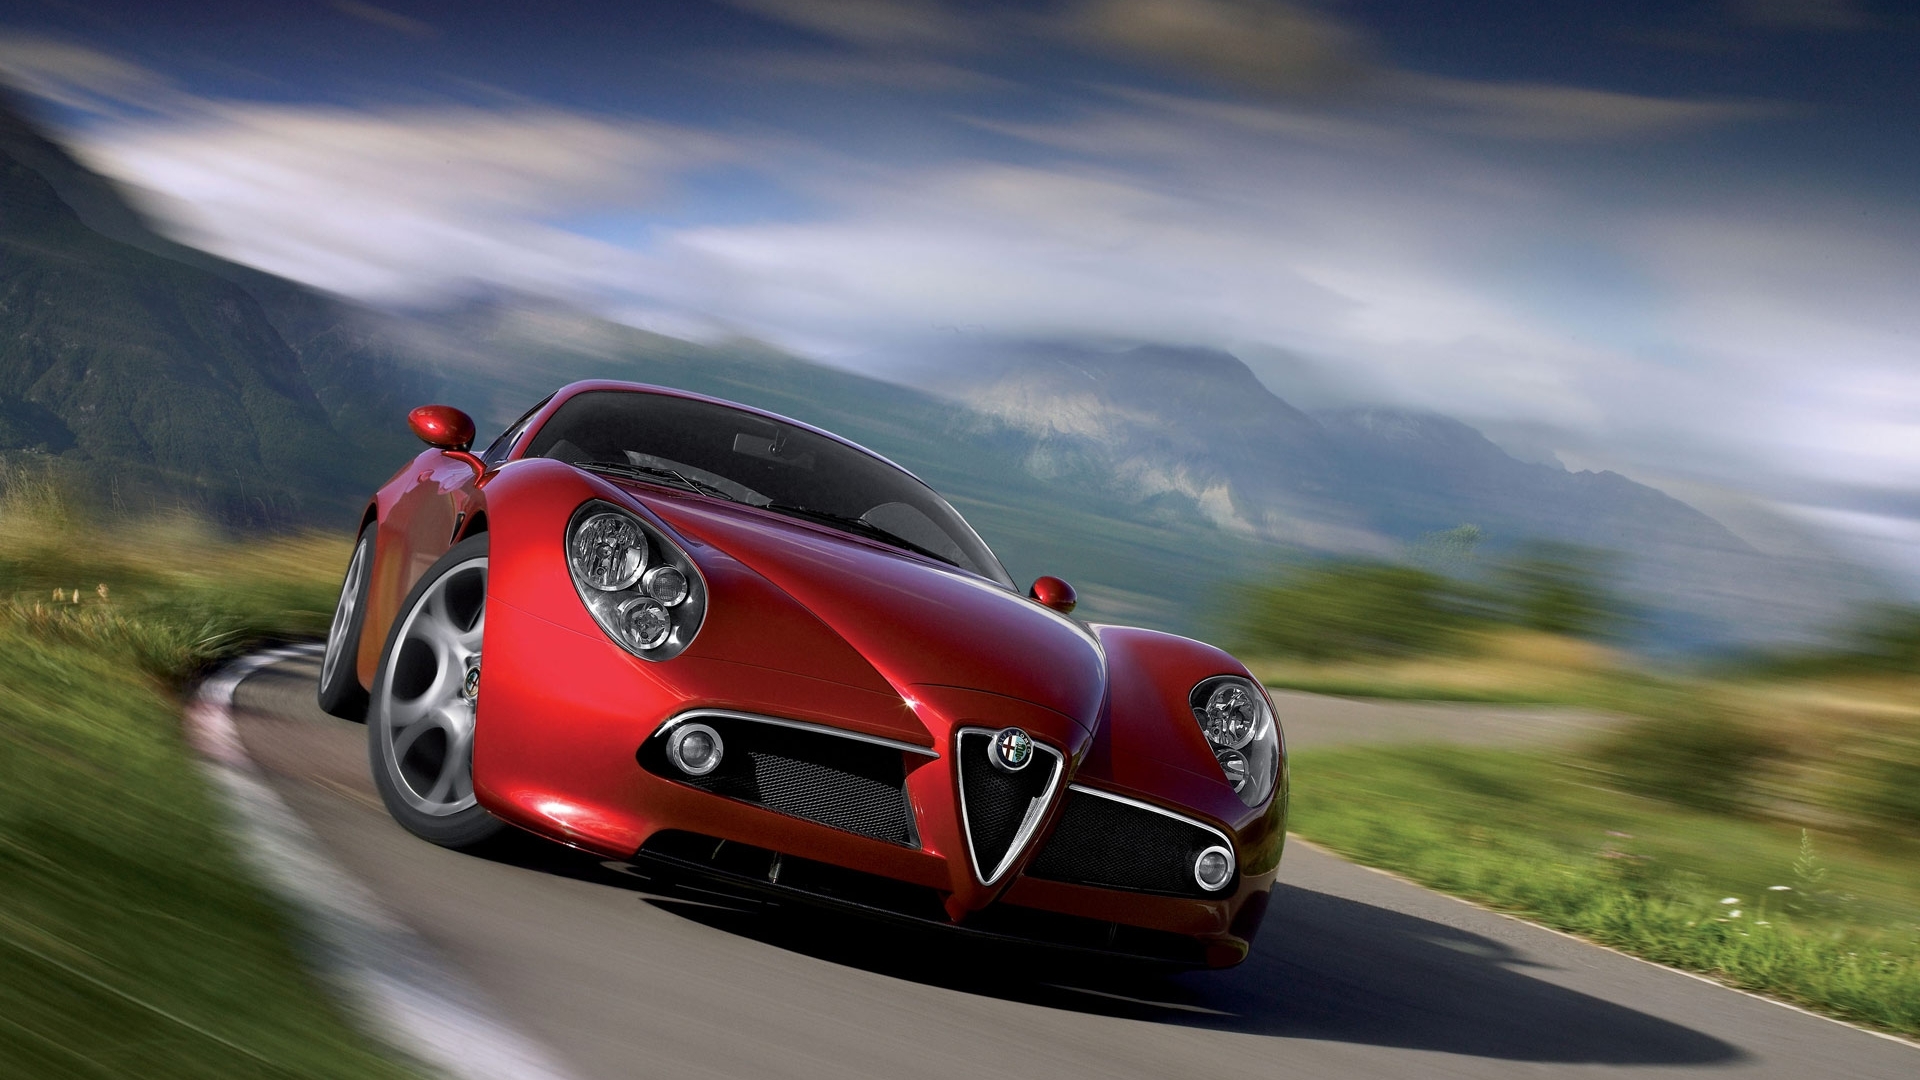 Скачать картинку Альфа Ромео (Alfa Romeo), Транспорт, Машины в телефон бесплатно.